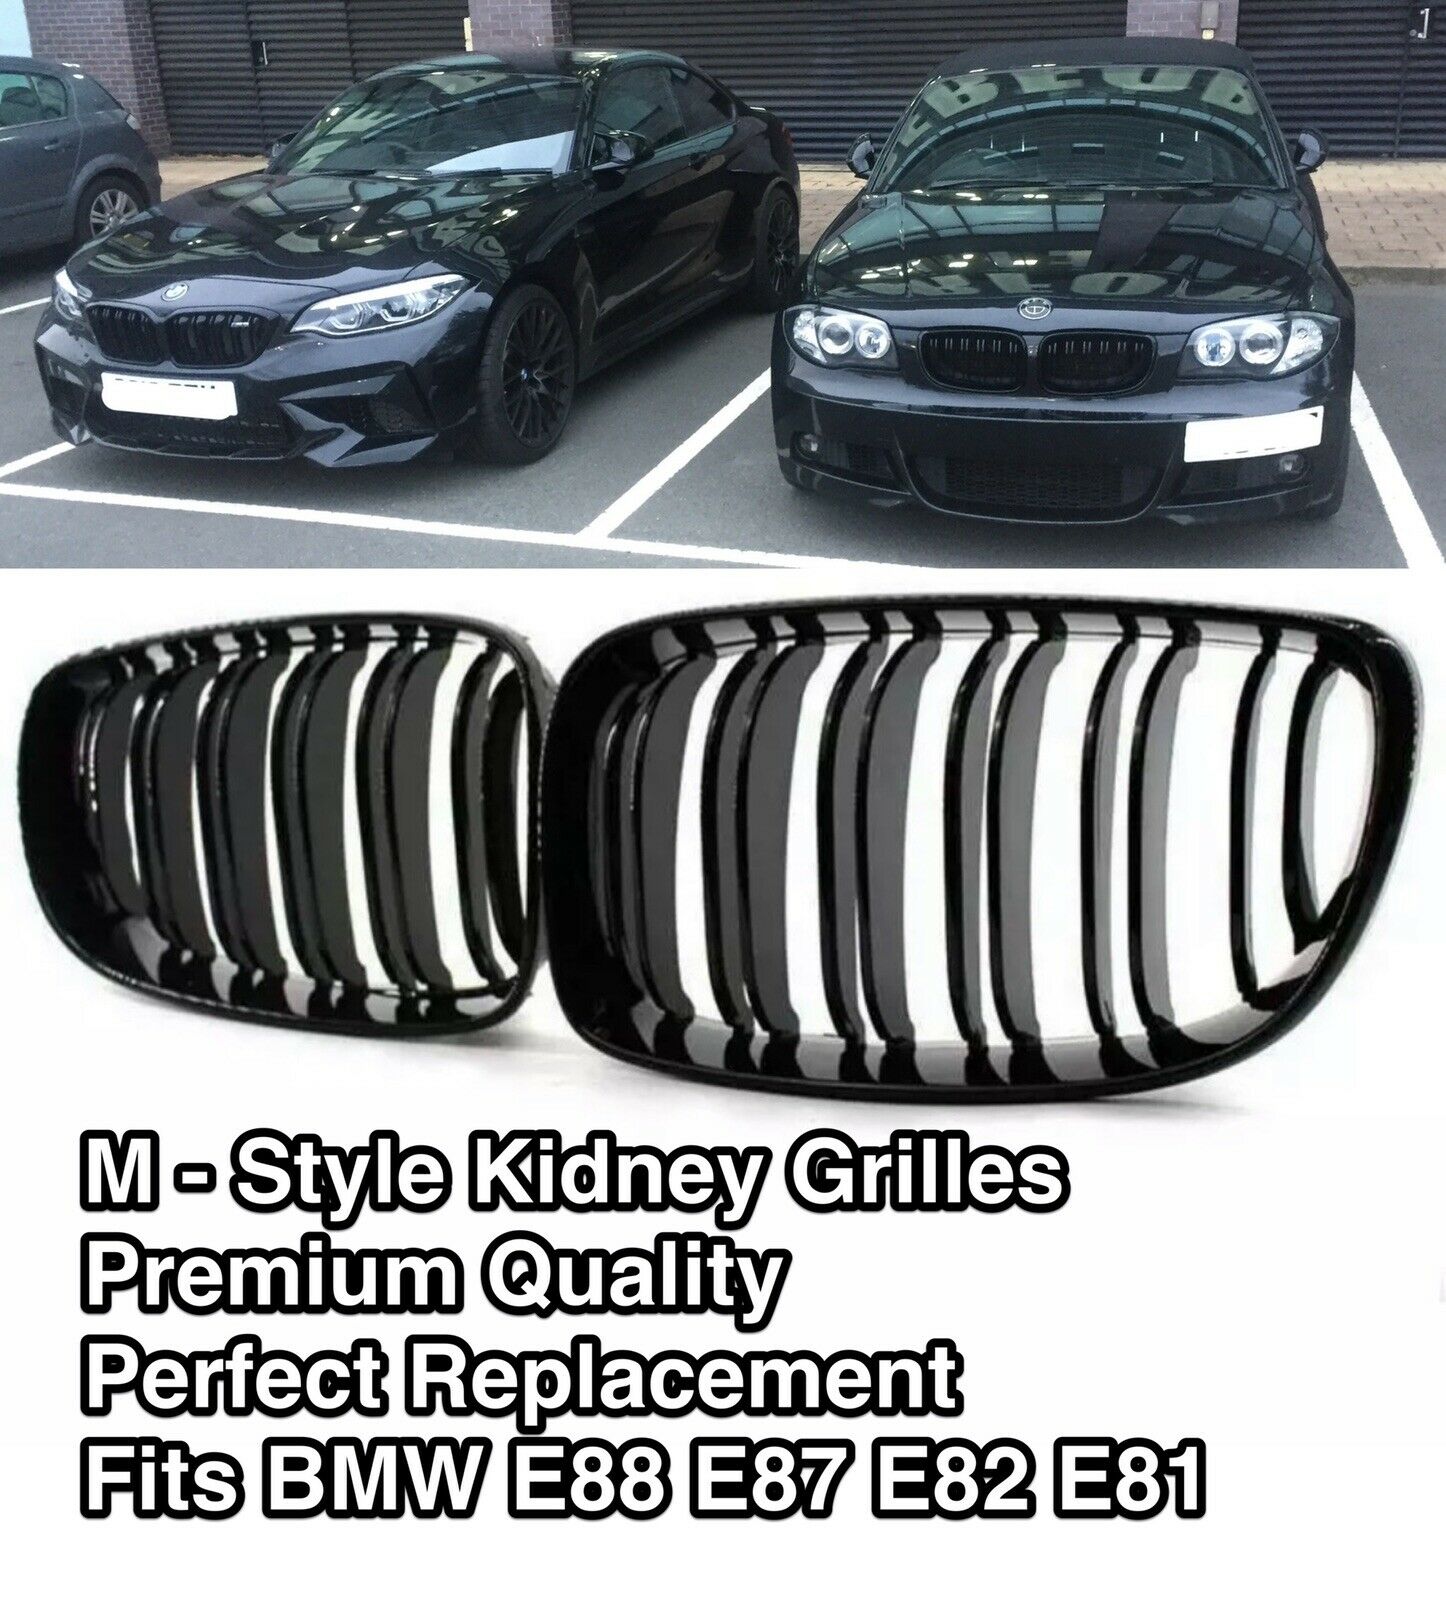 2X Gloss Black Front Kidney Grille Grill For BMW 1 SERIES E81 E82 E87 E88 07-13 